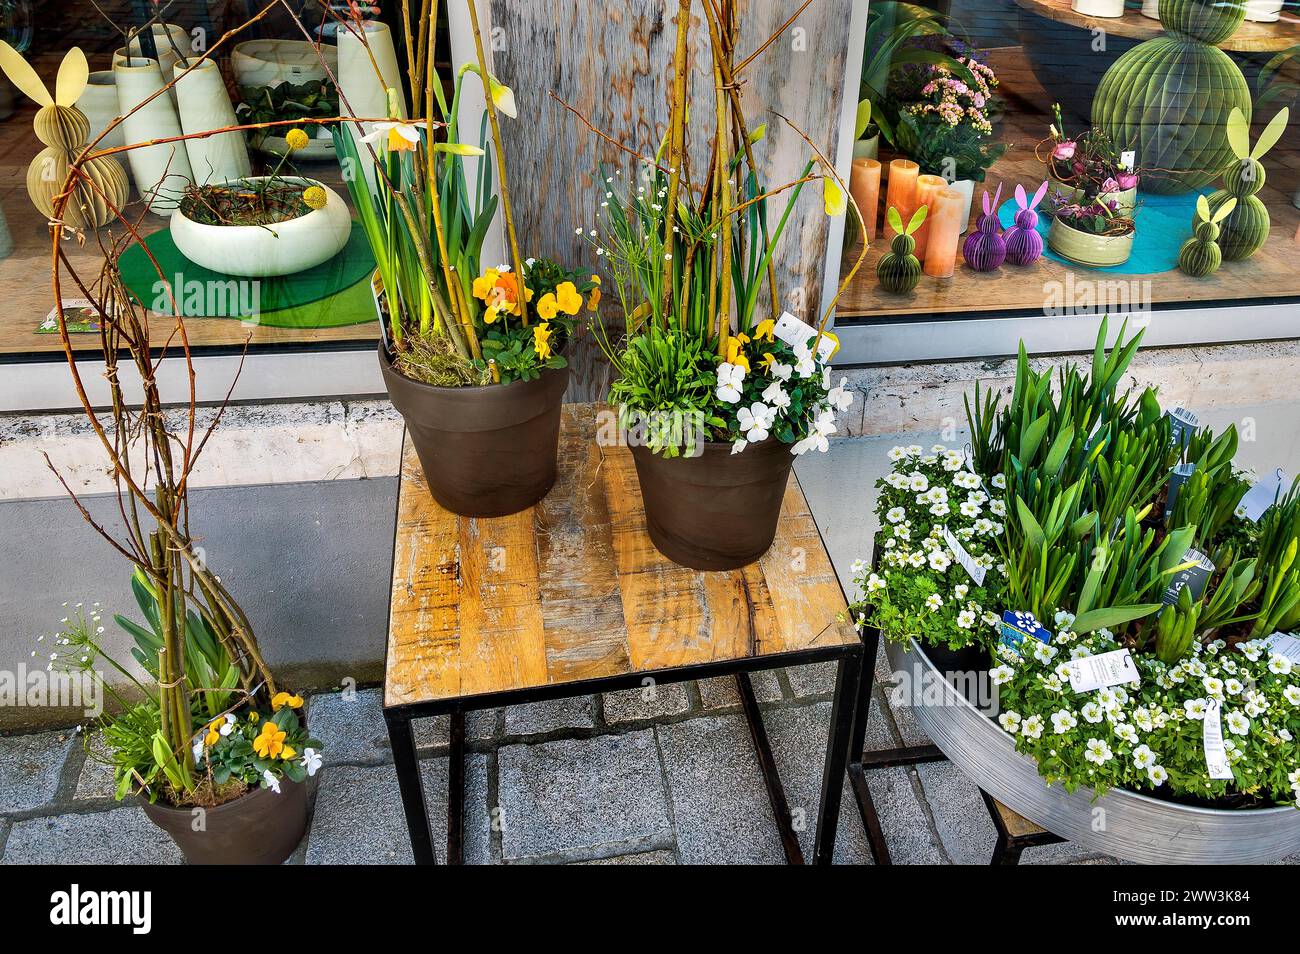 Risveglio primaverile, negozio di fiori con decorazioni pasquali, Kempten, Allgaeu, Baviera, Germania Foto Stock